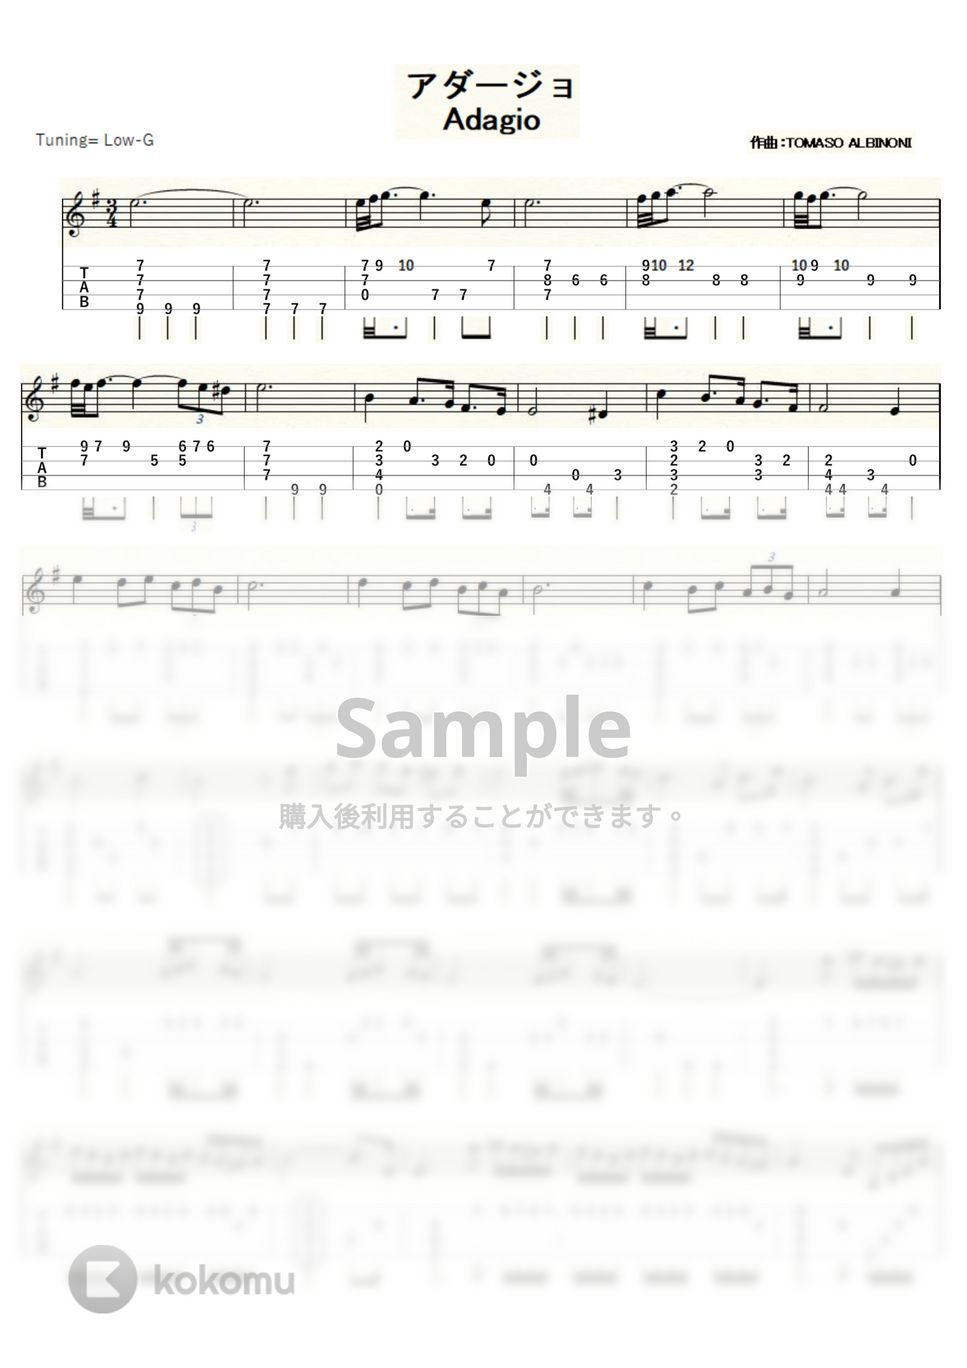 アルビノーニのアダージョ (ｳｸﾚﾚｿﾛ / Low-G / 中級～上級) by ukulelepapa